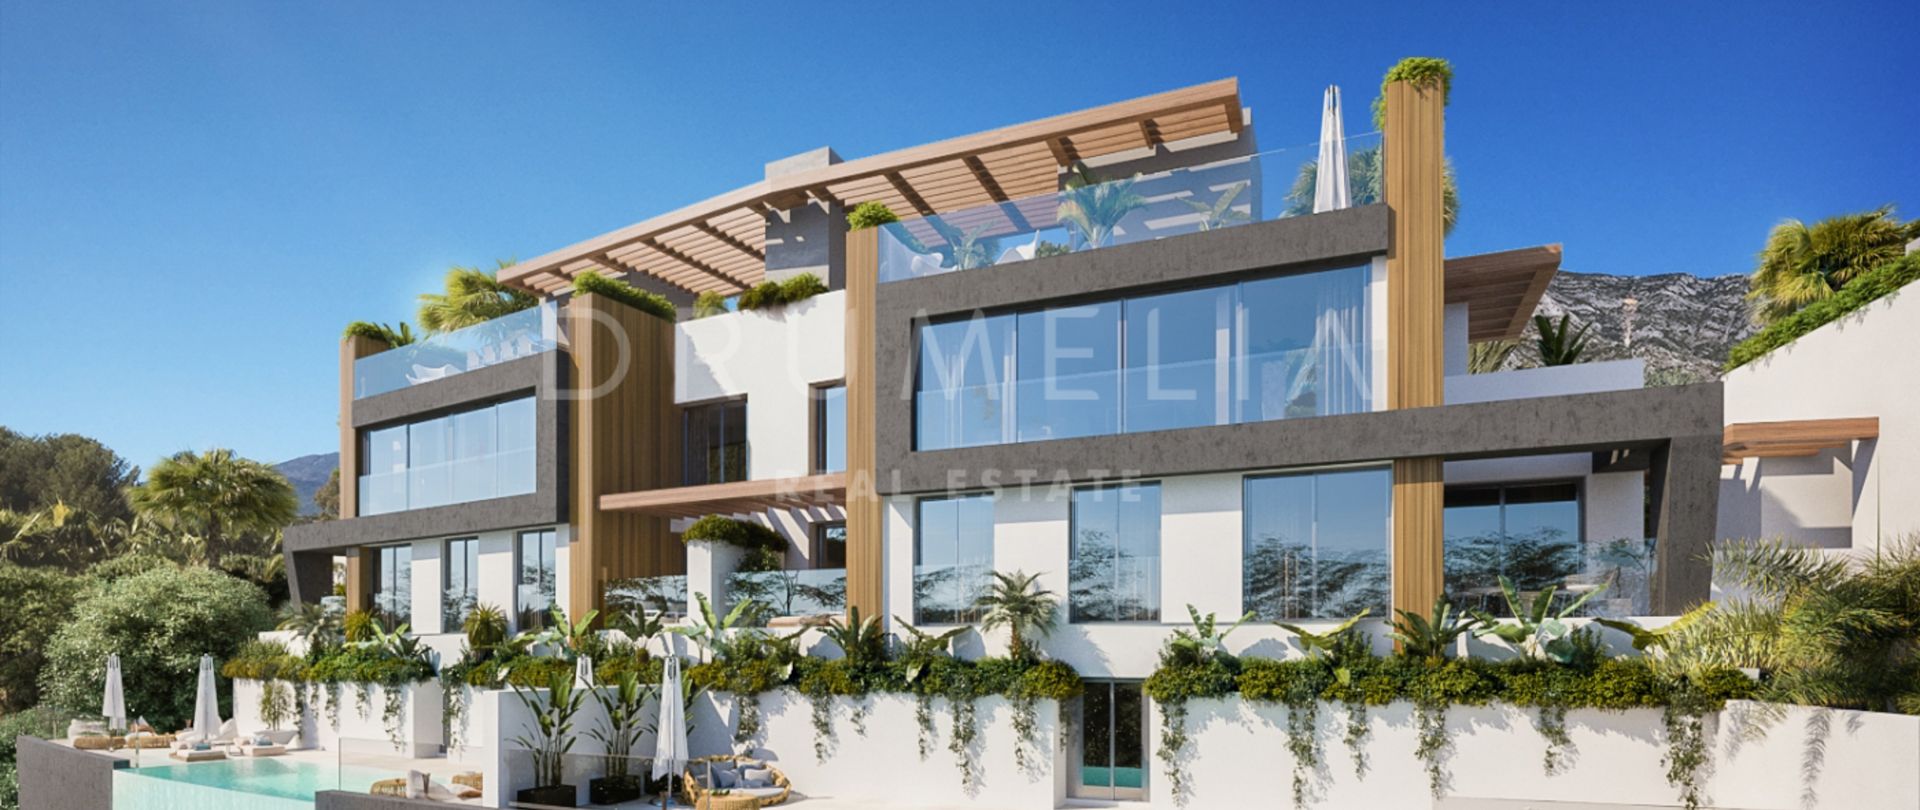 Ny fantastisk modern, parhusliknande lyxvilla (projekt), Benahavis